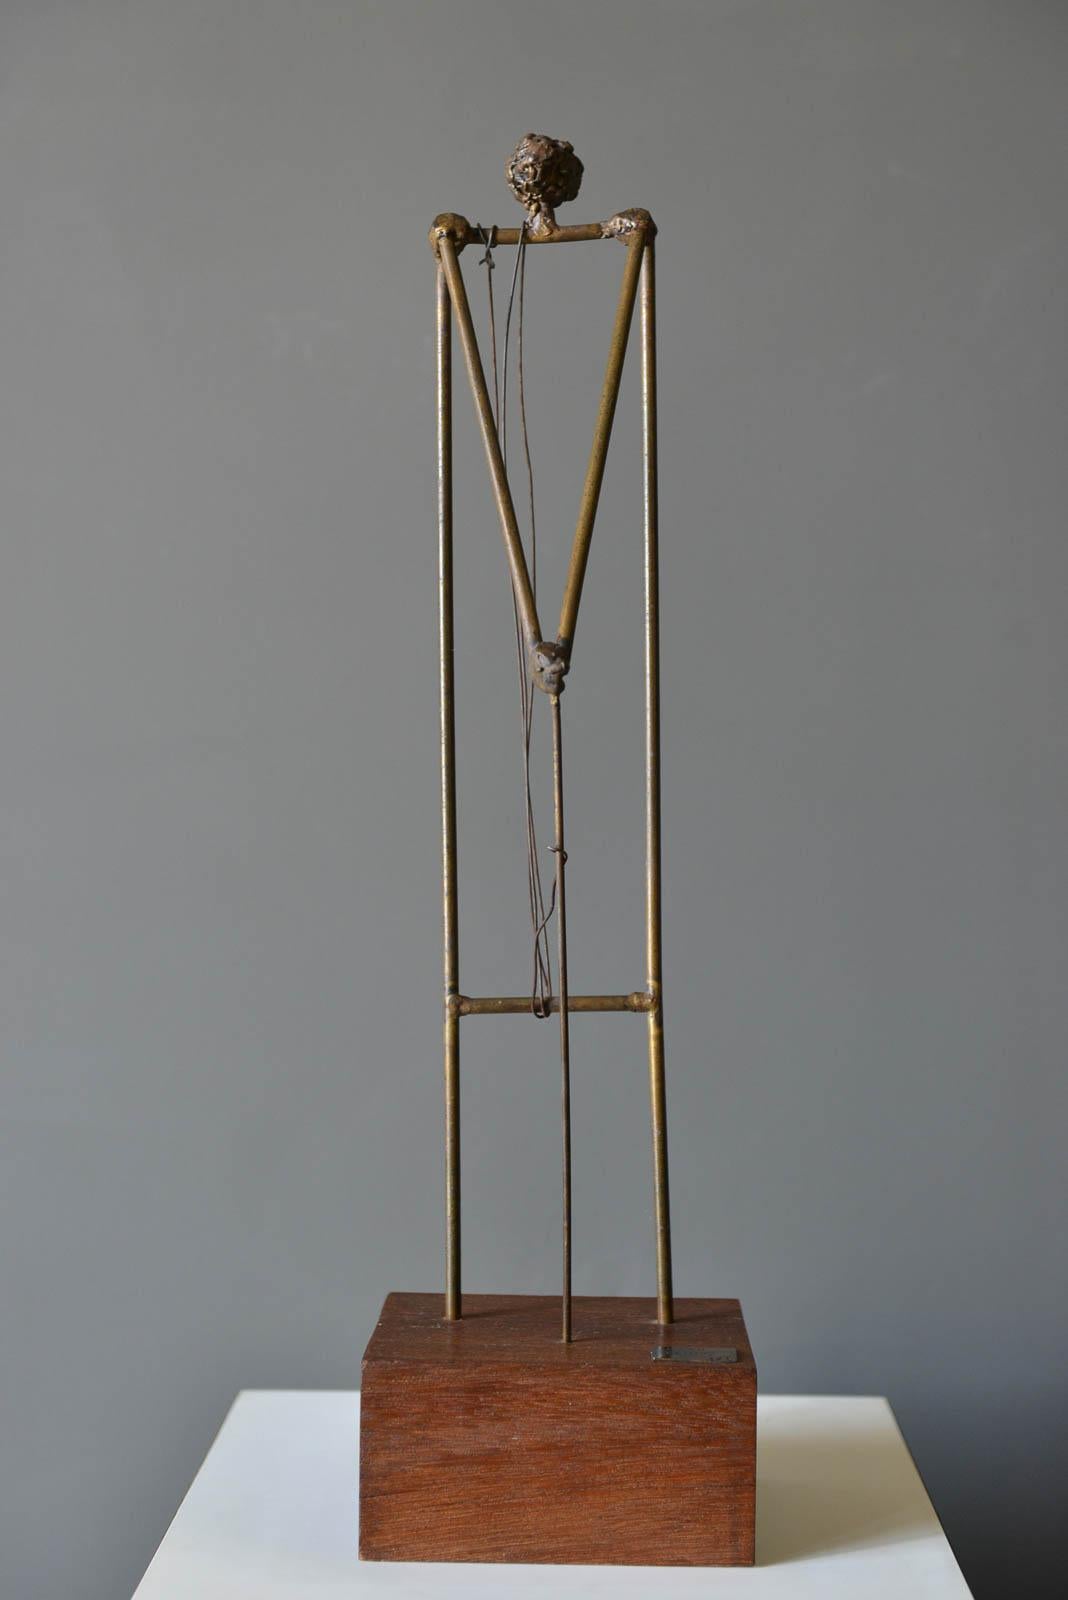 Figurative Bronzeskulptur des kalifornischen Künstlers Ken Vares, 1968. Einzigartige signierte 1/1 Skulptur auf Sockel mit Künstlersignatur und Datum 4/68. Bronze auf Nussbaumsockel. Maße: 22